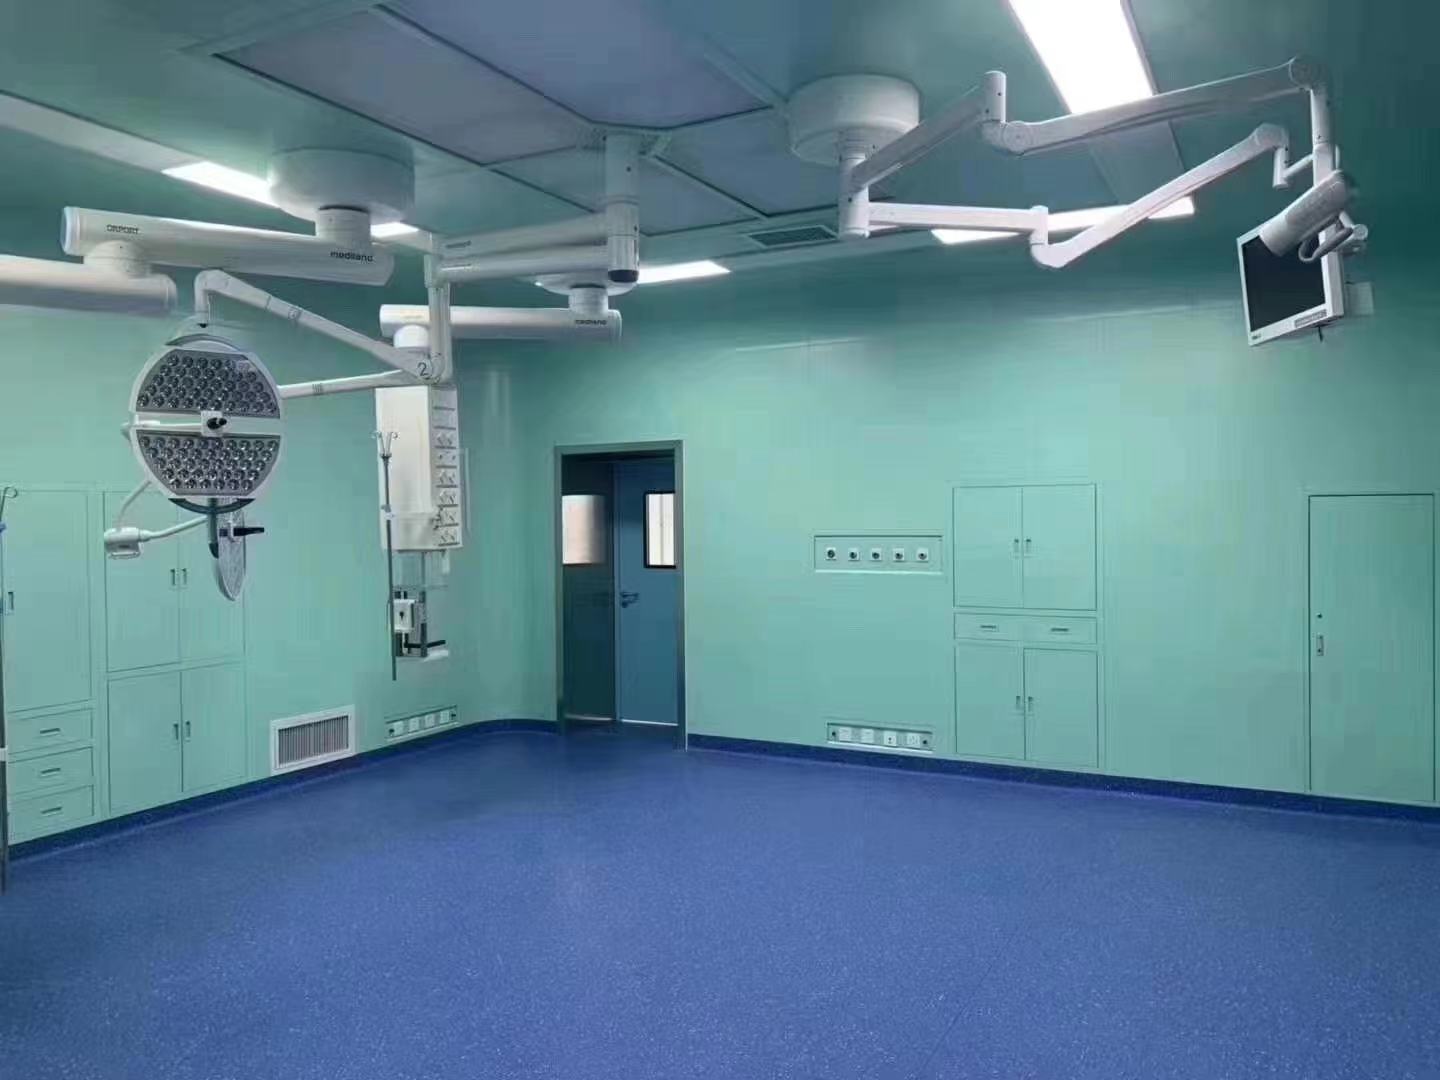 襄阳海美手术室净化工程装修攻略